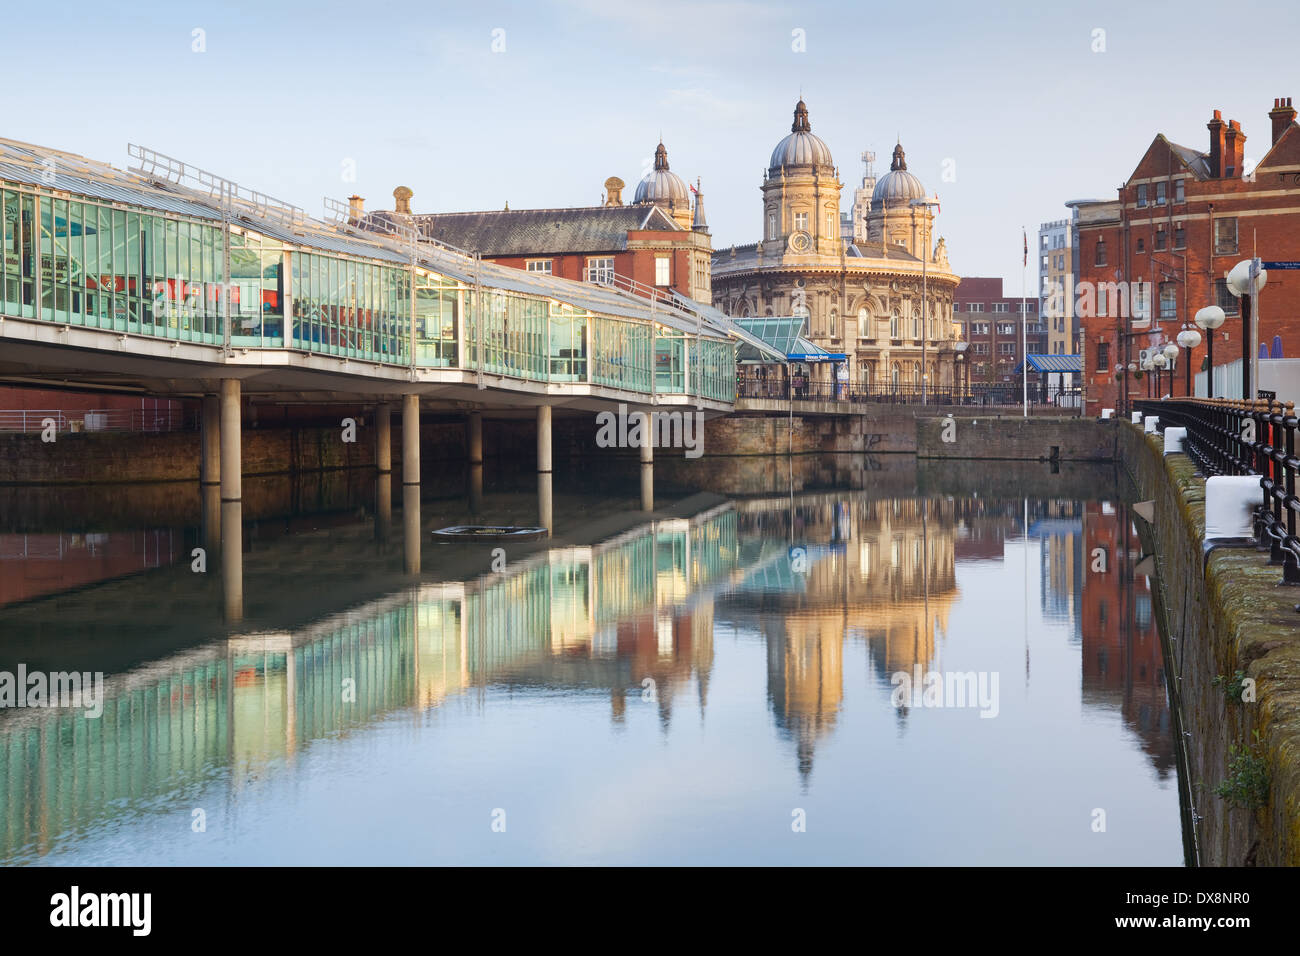 Das Maritime Museum und Princes Quay Einkaufszentrum im Stadtzentrum von Hull. Hull, East Yorkshire. März 2014. Stockfoto